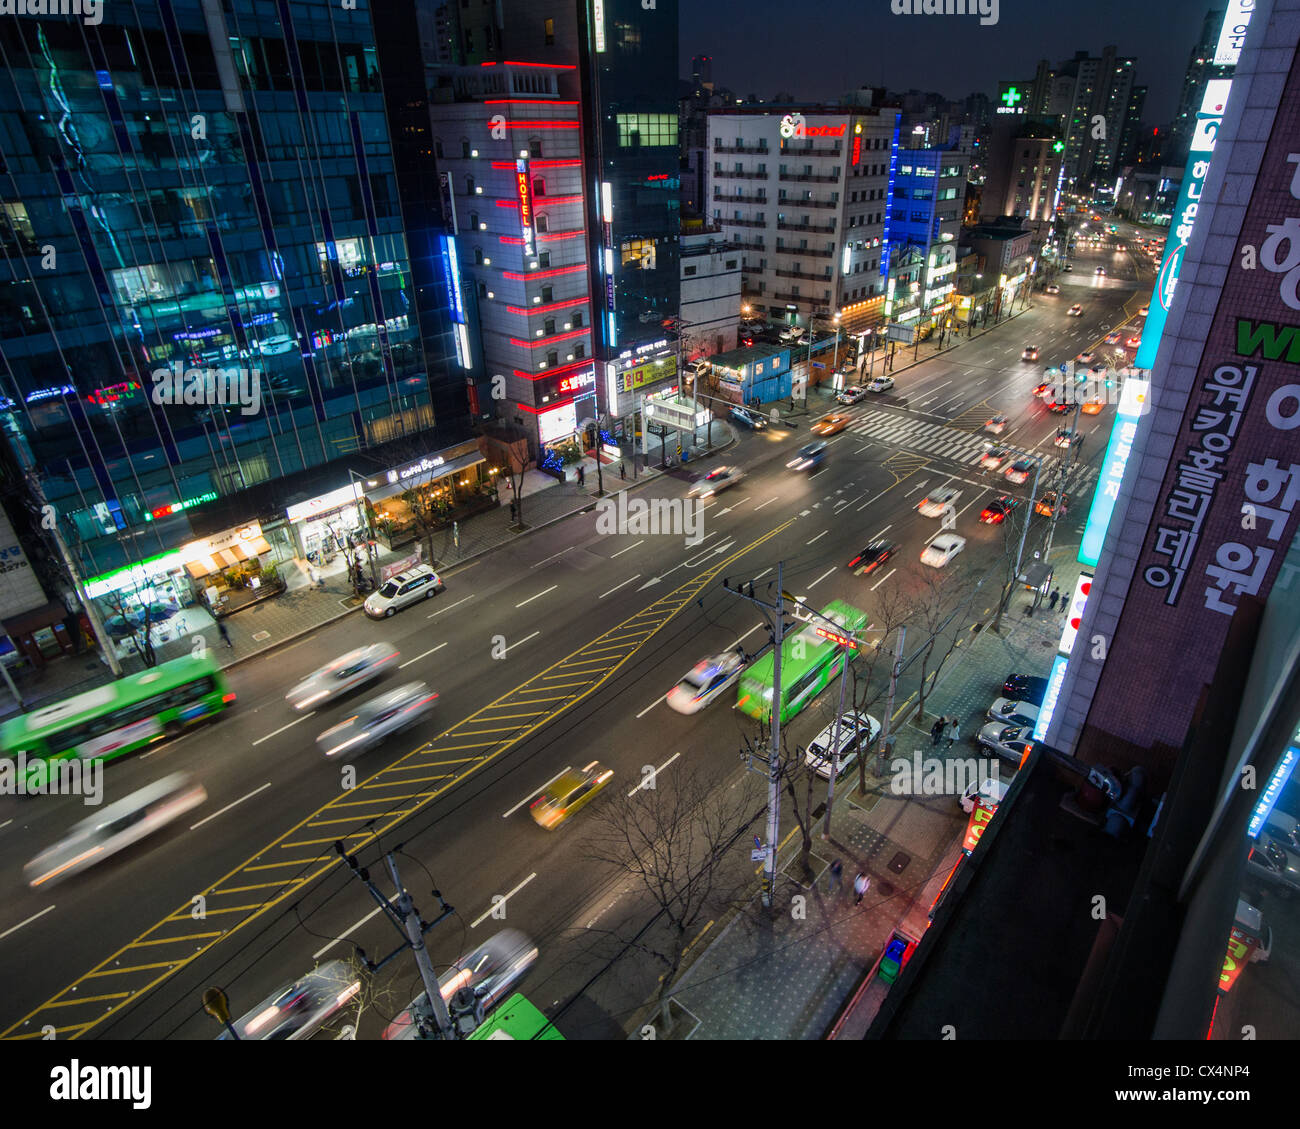 Les lumières de la ville dans le quartier de Shinchon Seoul, Corée du Sud Banque D'Images